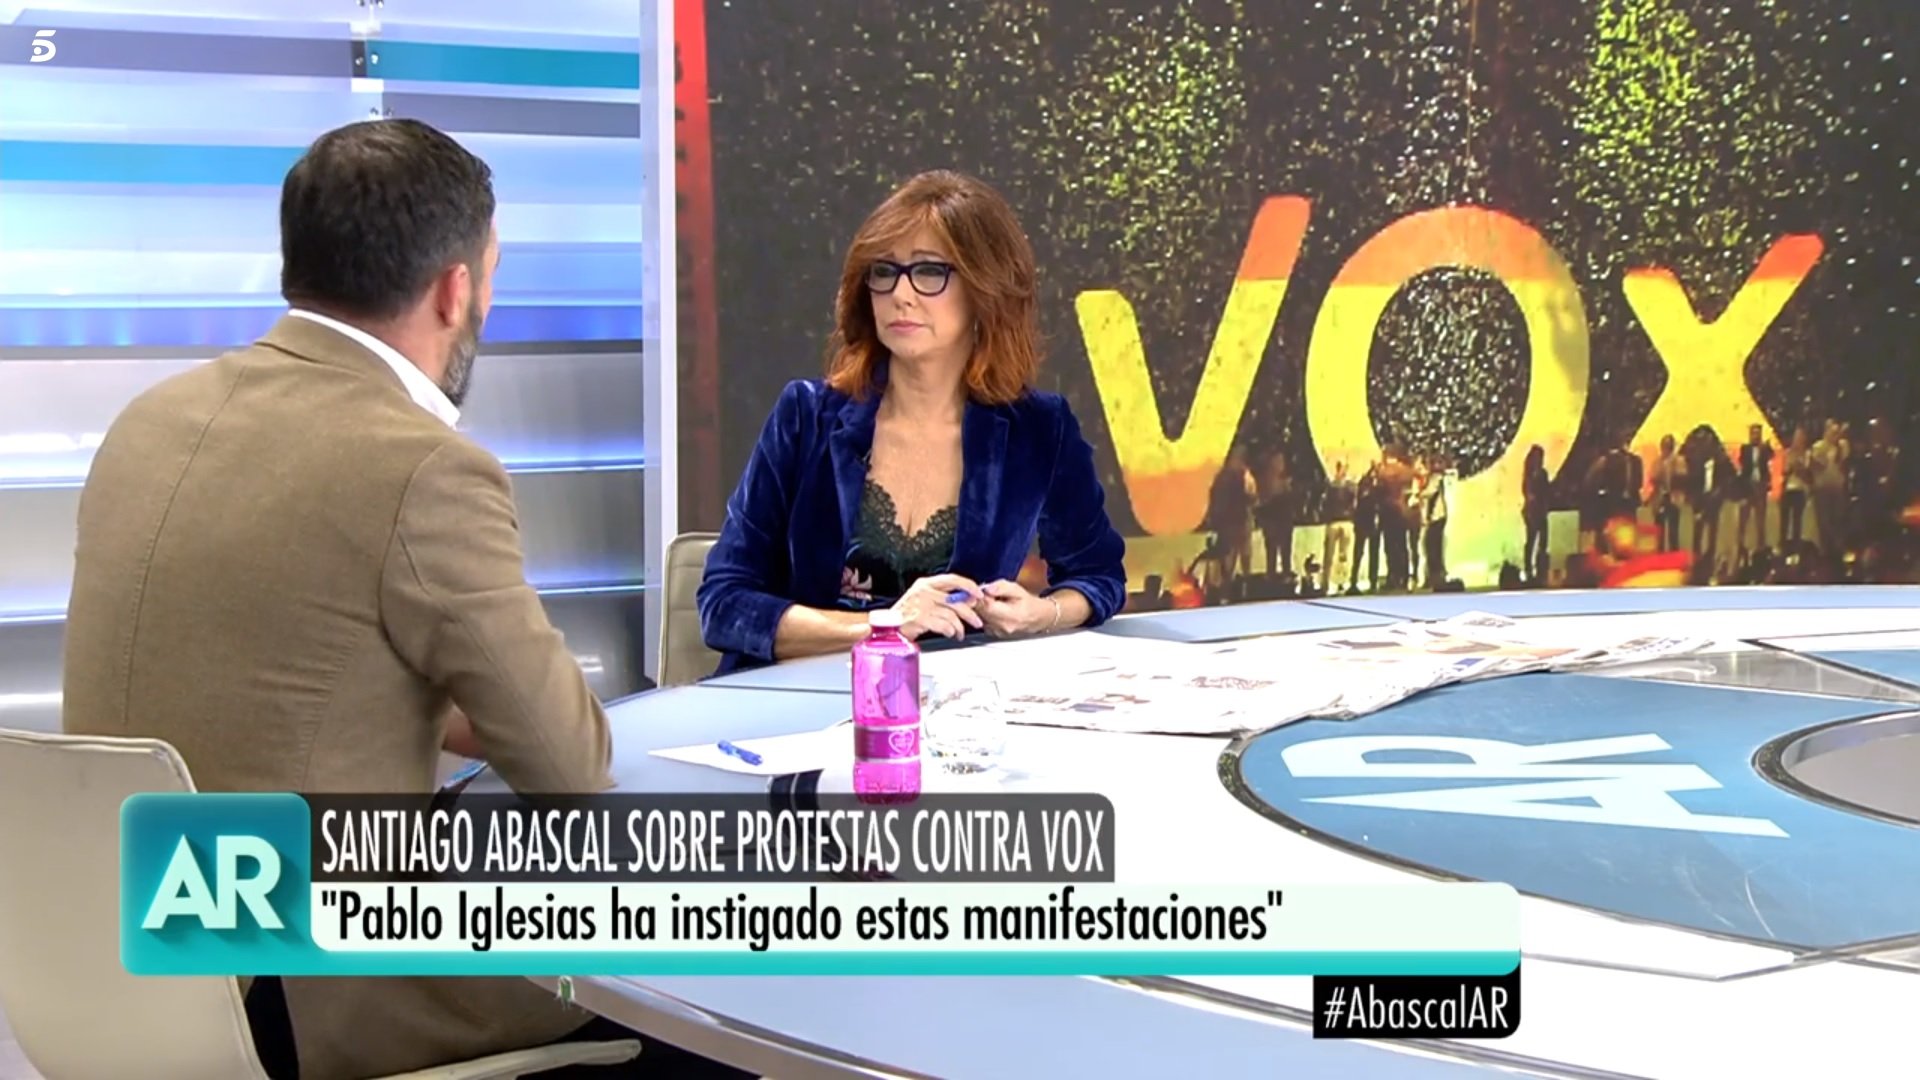 Ana Rosa Quintana li tira els trastos en directe a Santiago Abascal en una entrevista d'escàndol